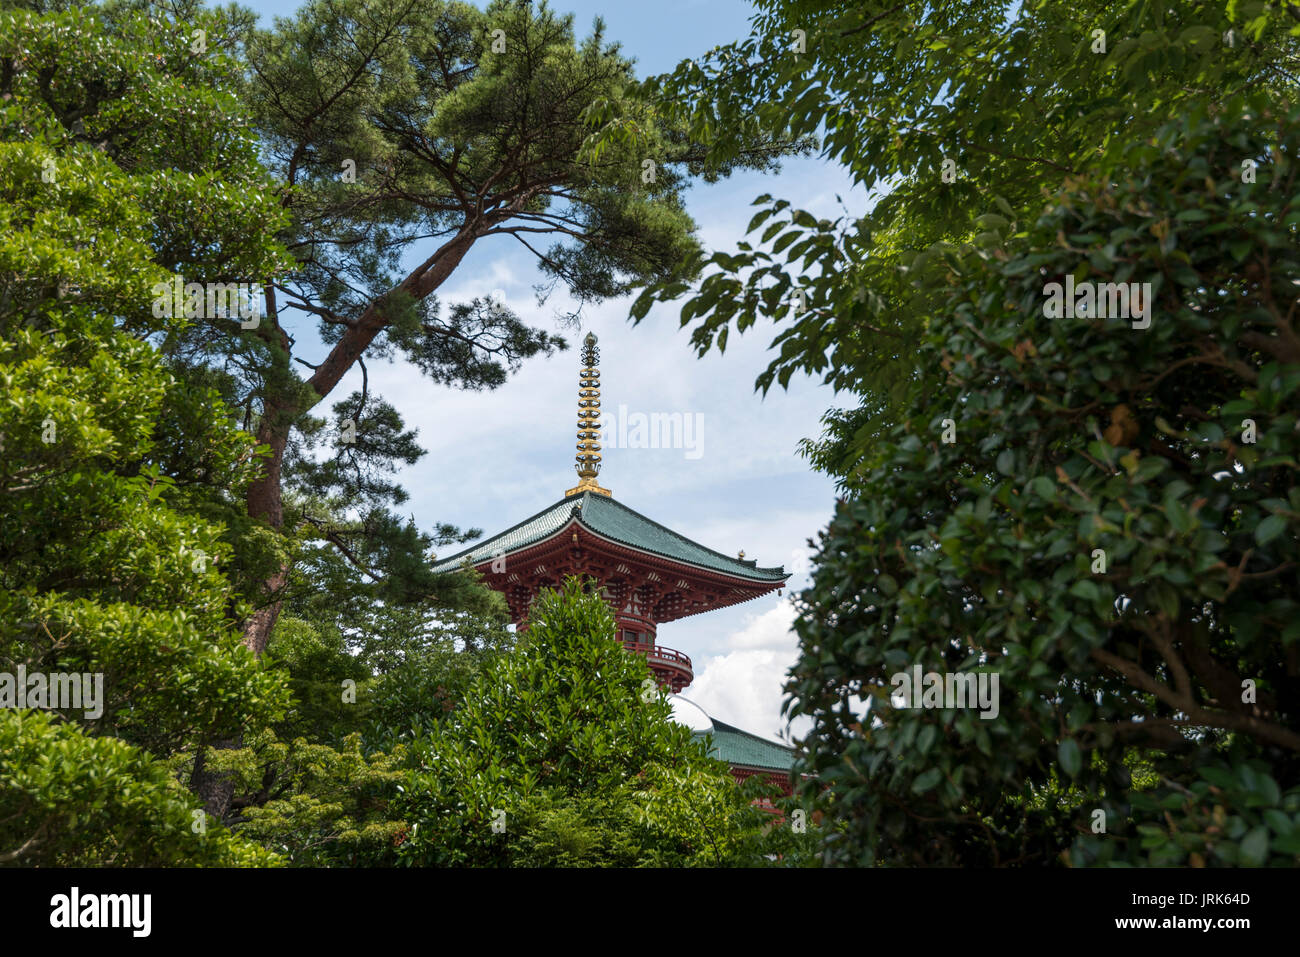 Temple de la pagode de la paix, Naritasan shinshoji temple bouddhiste, Narita, Japon Banque D'Images